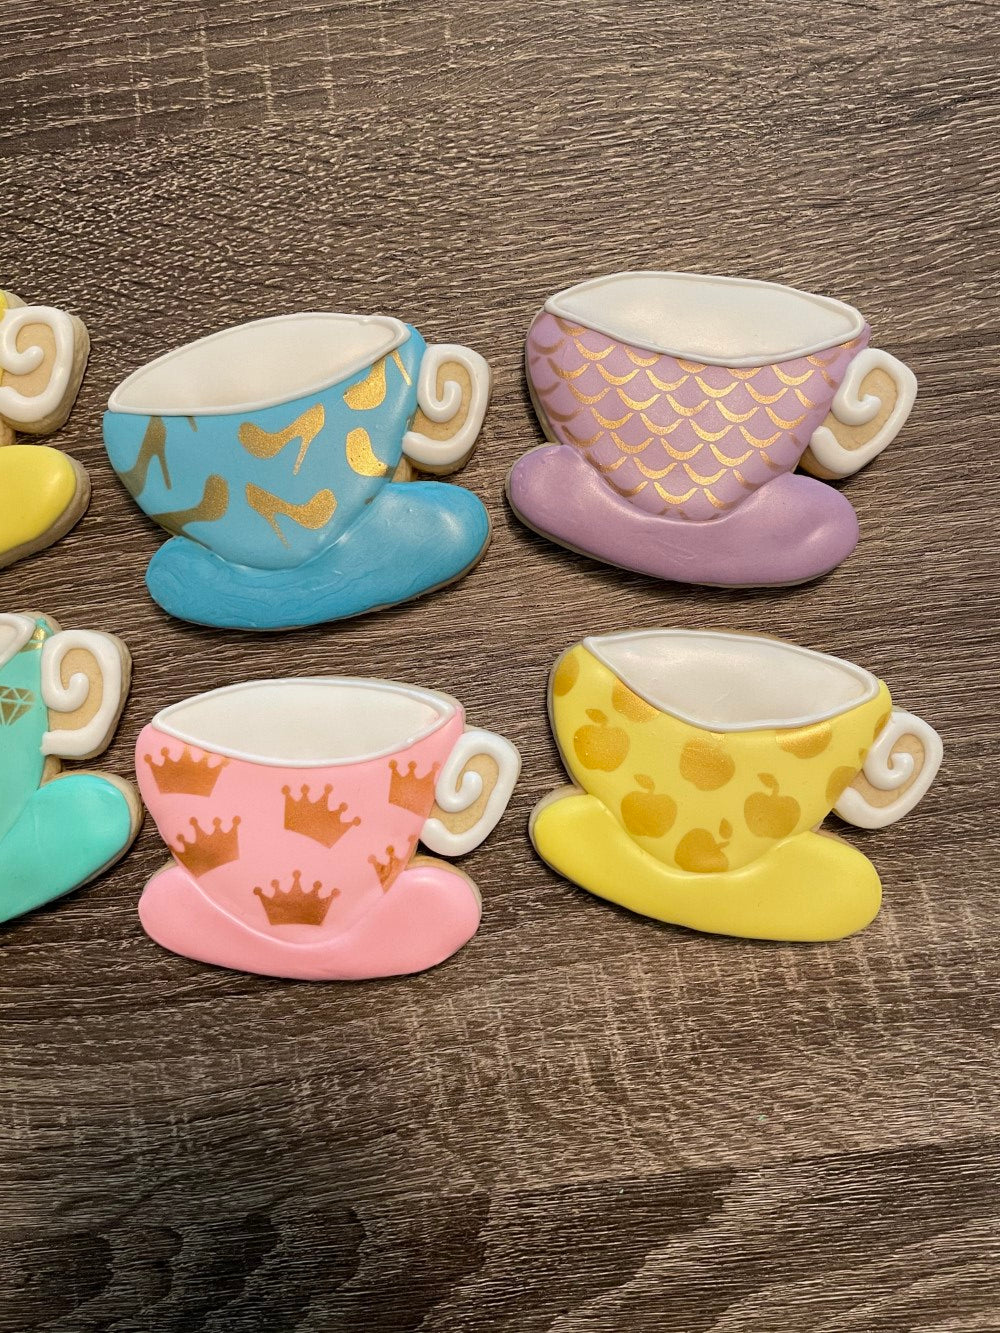 Disney Princess Tea Cup Cookies